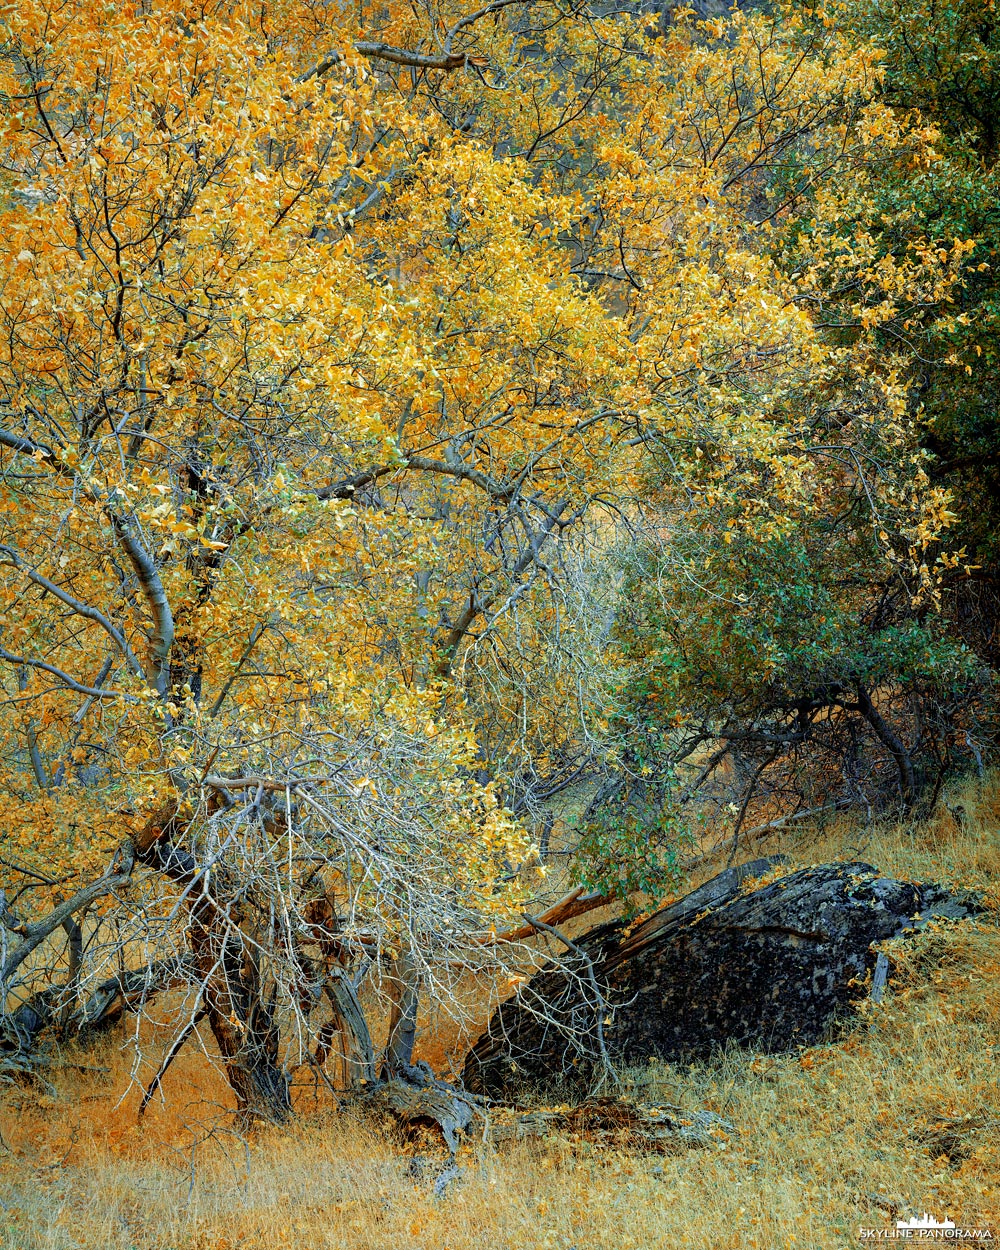 Zion Largeformat - Hier als Motiv zu sehen ist ein Cottenwood Tree - zu Deutsch Schwarzpappel - im Zion Nationalpark. Der Baum steht in voller herbstlicher Laubfärbung und wurde von mir in der Big Bend Region im Main Canyon des Parks entdeckt und auf 4x5" Film im Großformat als Dia festgehalten.